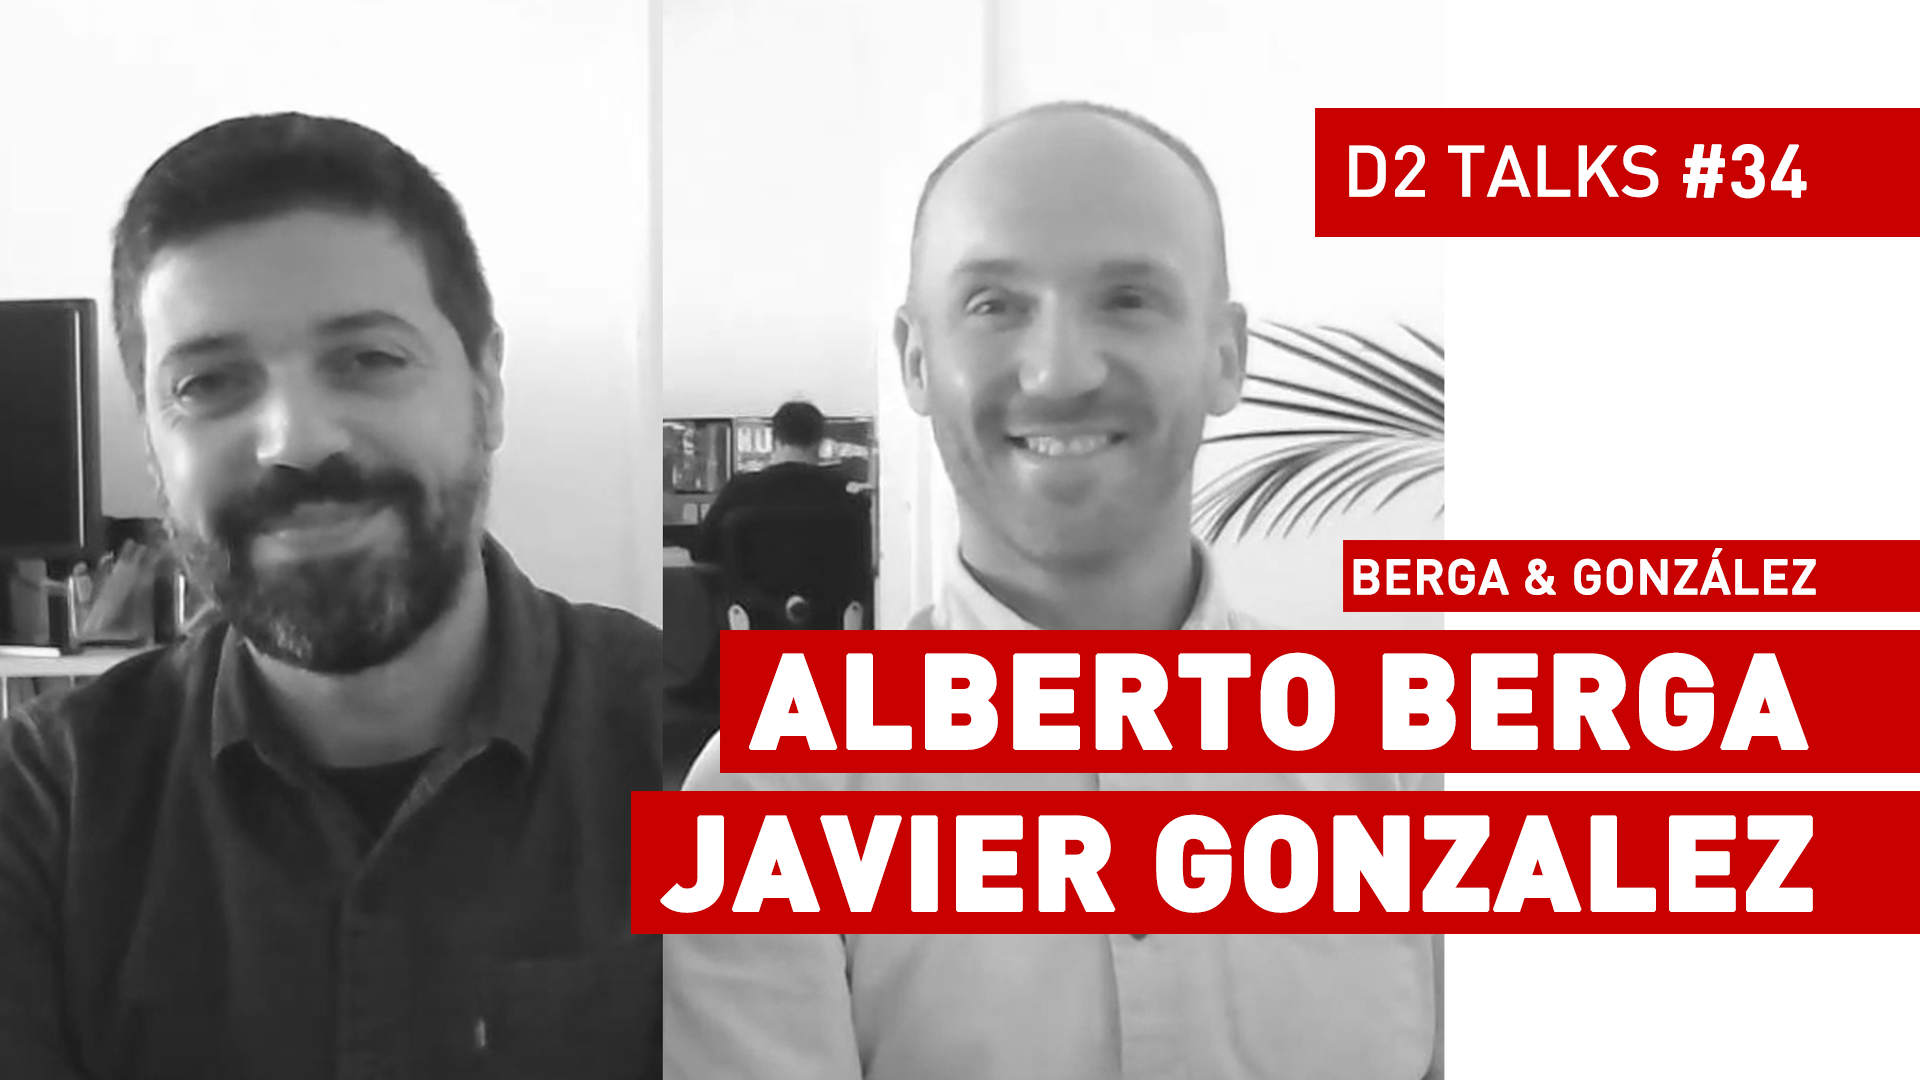 D2 Talks #34: Alberto Berga & Javier González of Berga & González